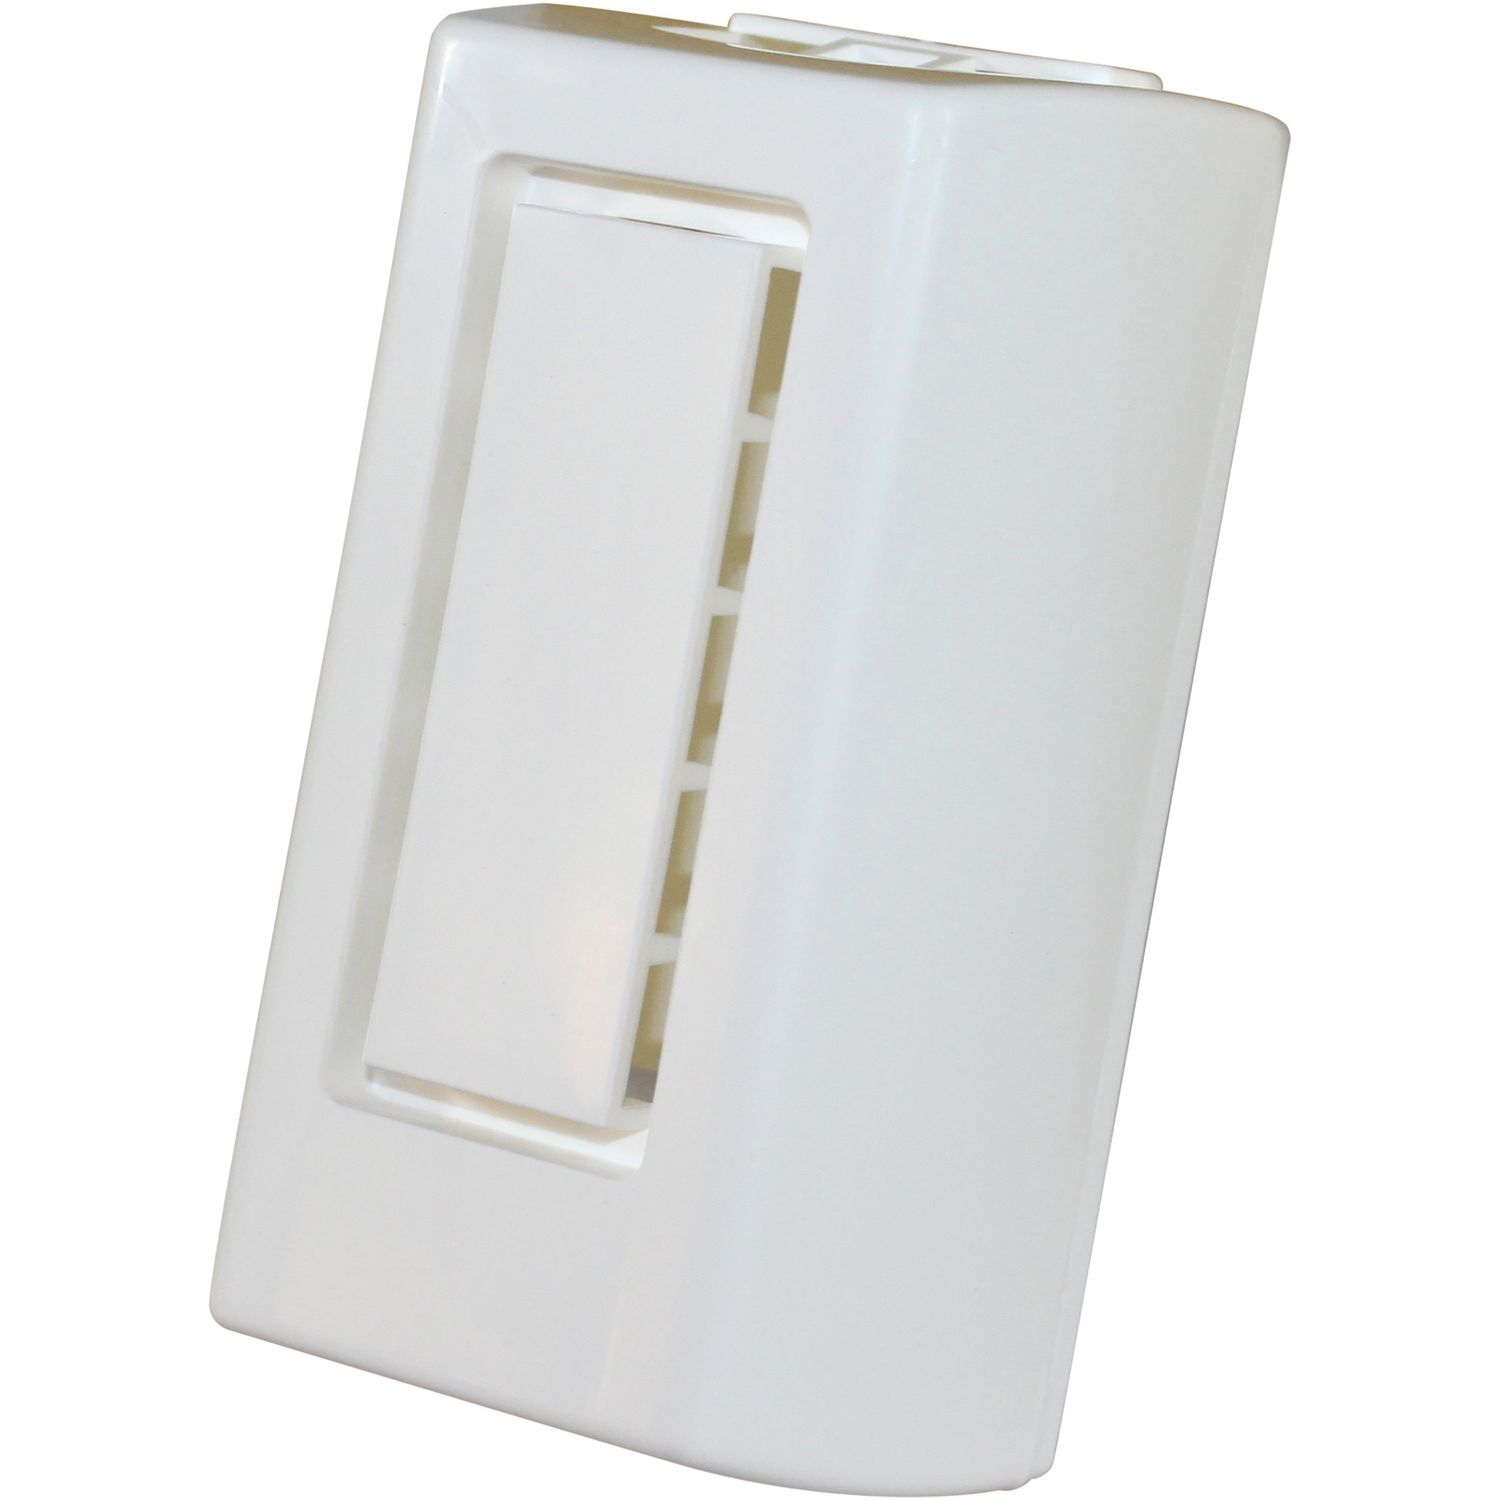 Mini Deodorant Wall Cabinet White